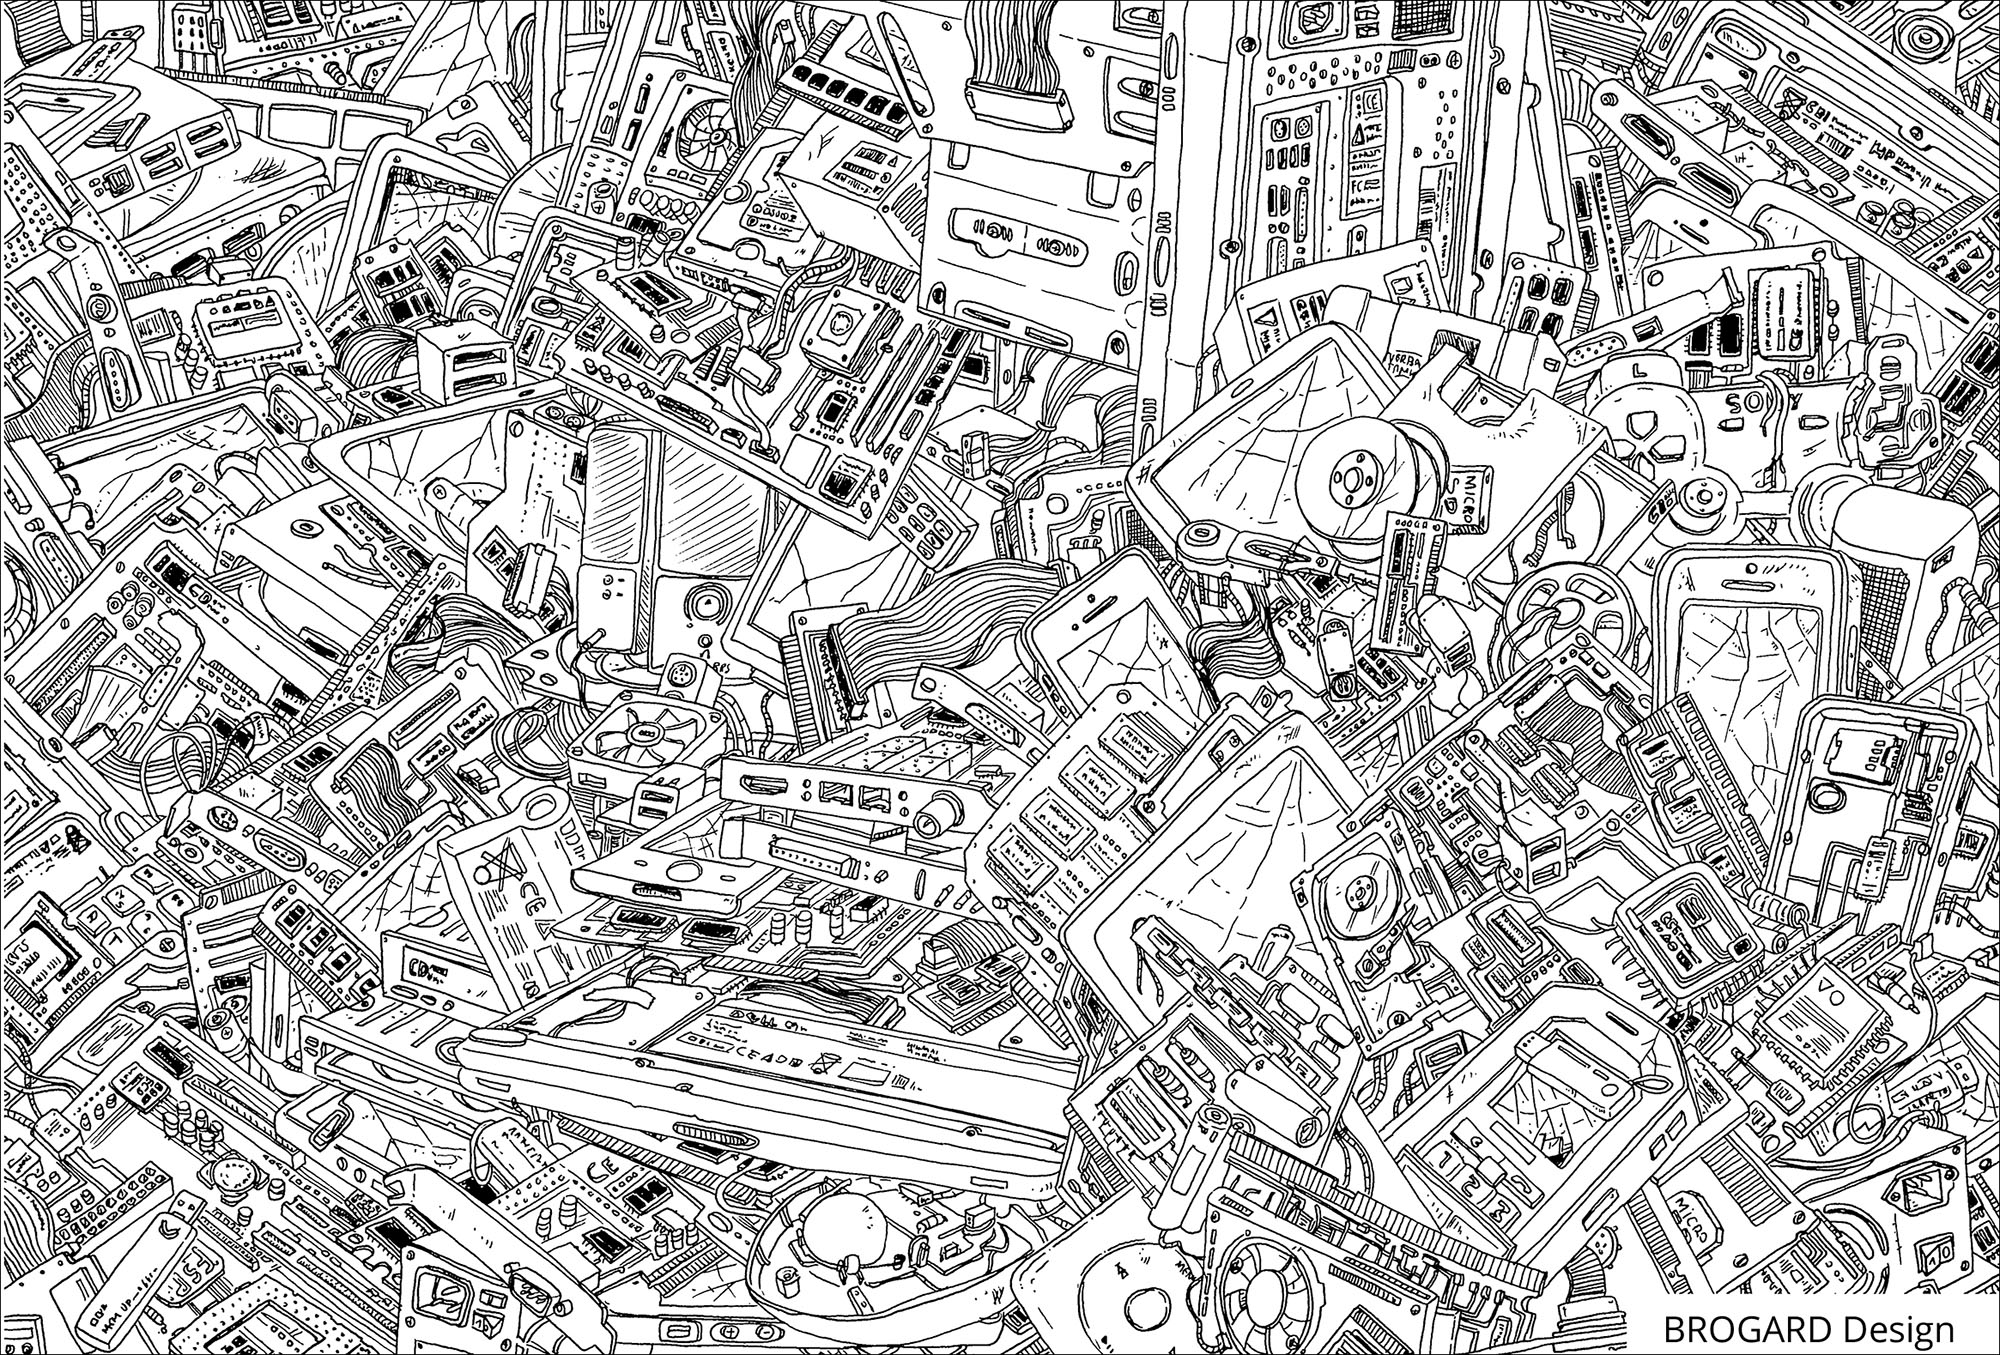 Eine Menge Details zum Ausmalen in dieser Zeichnung voller elektronischer Elemente aus Computern, Künstler : Frédéric Brogard